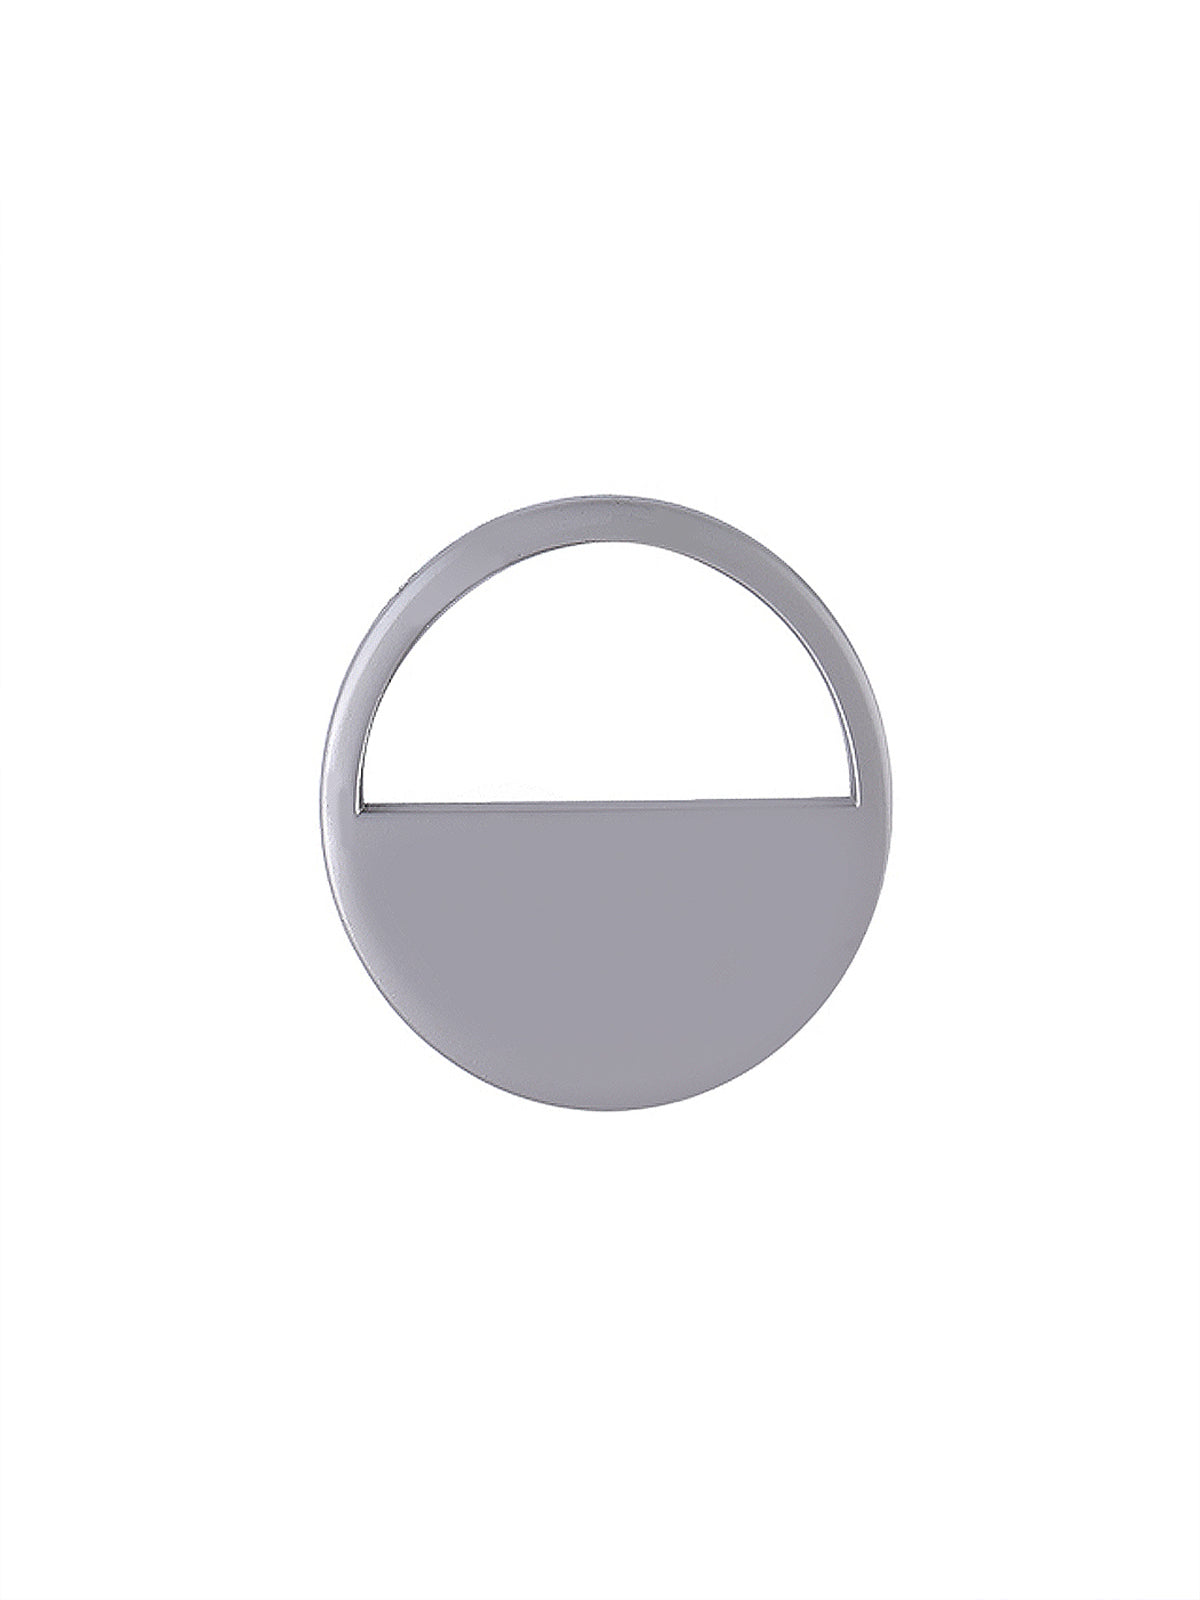 Fashionable Semi-Circle Ring Shape Decorative Button in Matte Silver Color